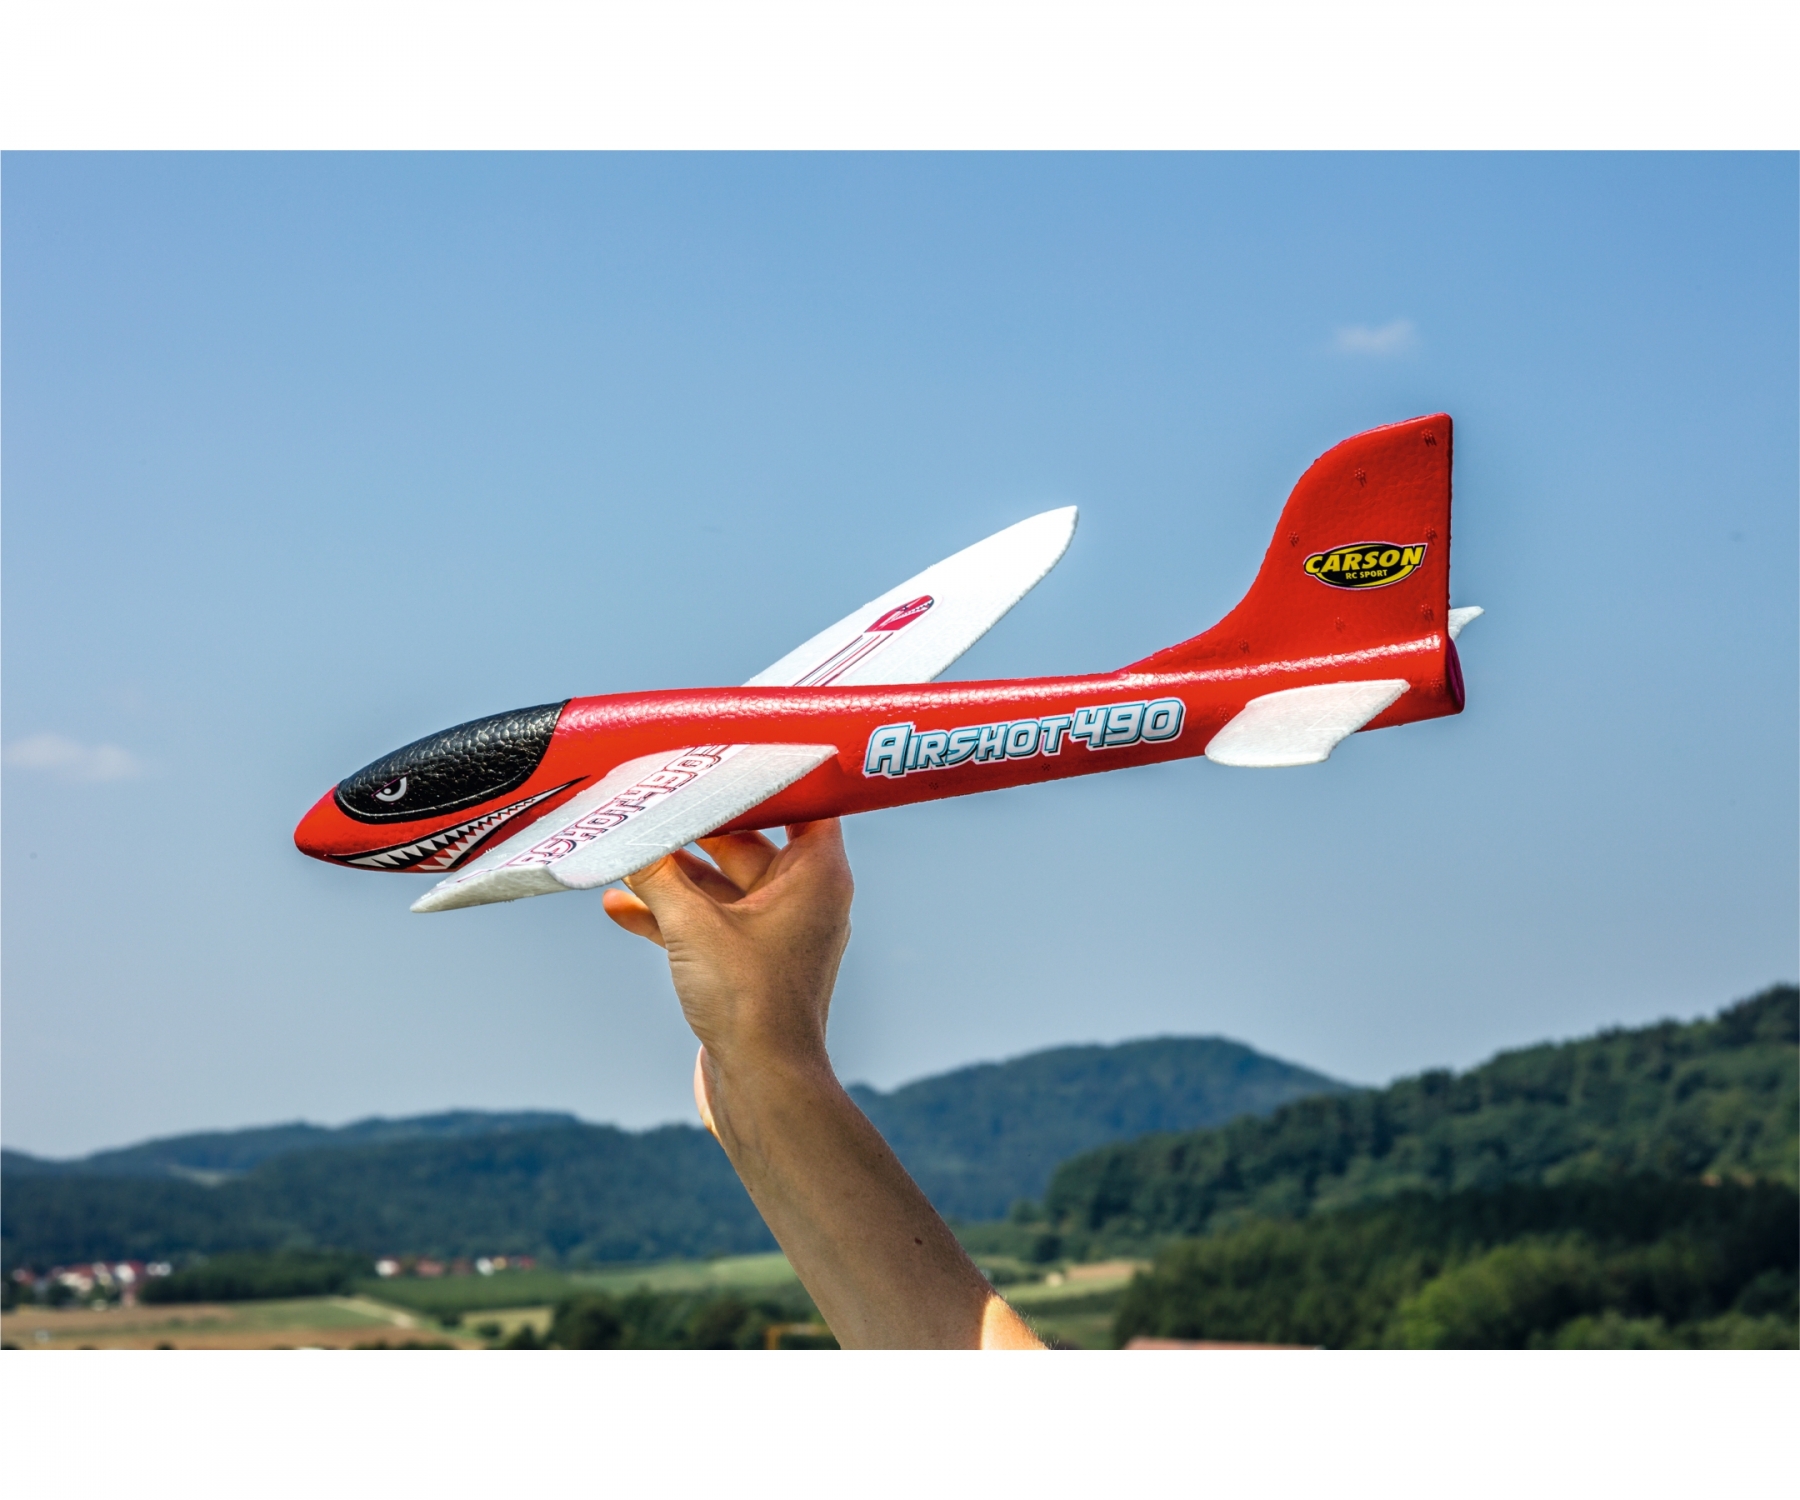 carson-500504013-3-Airshot-490-Wurfgleiter-Segelflugzeug-für-kleine-Kinderhände-rot-robust-haltbar